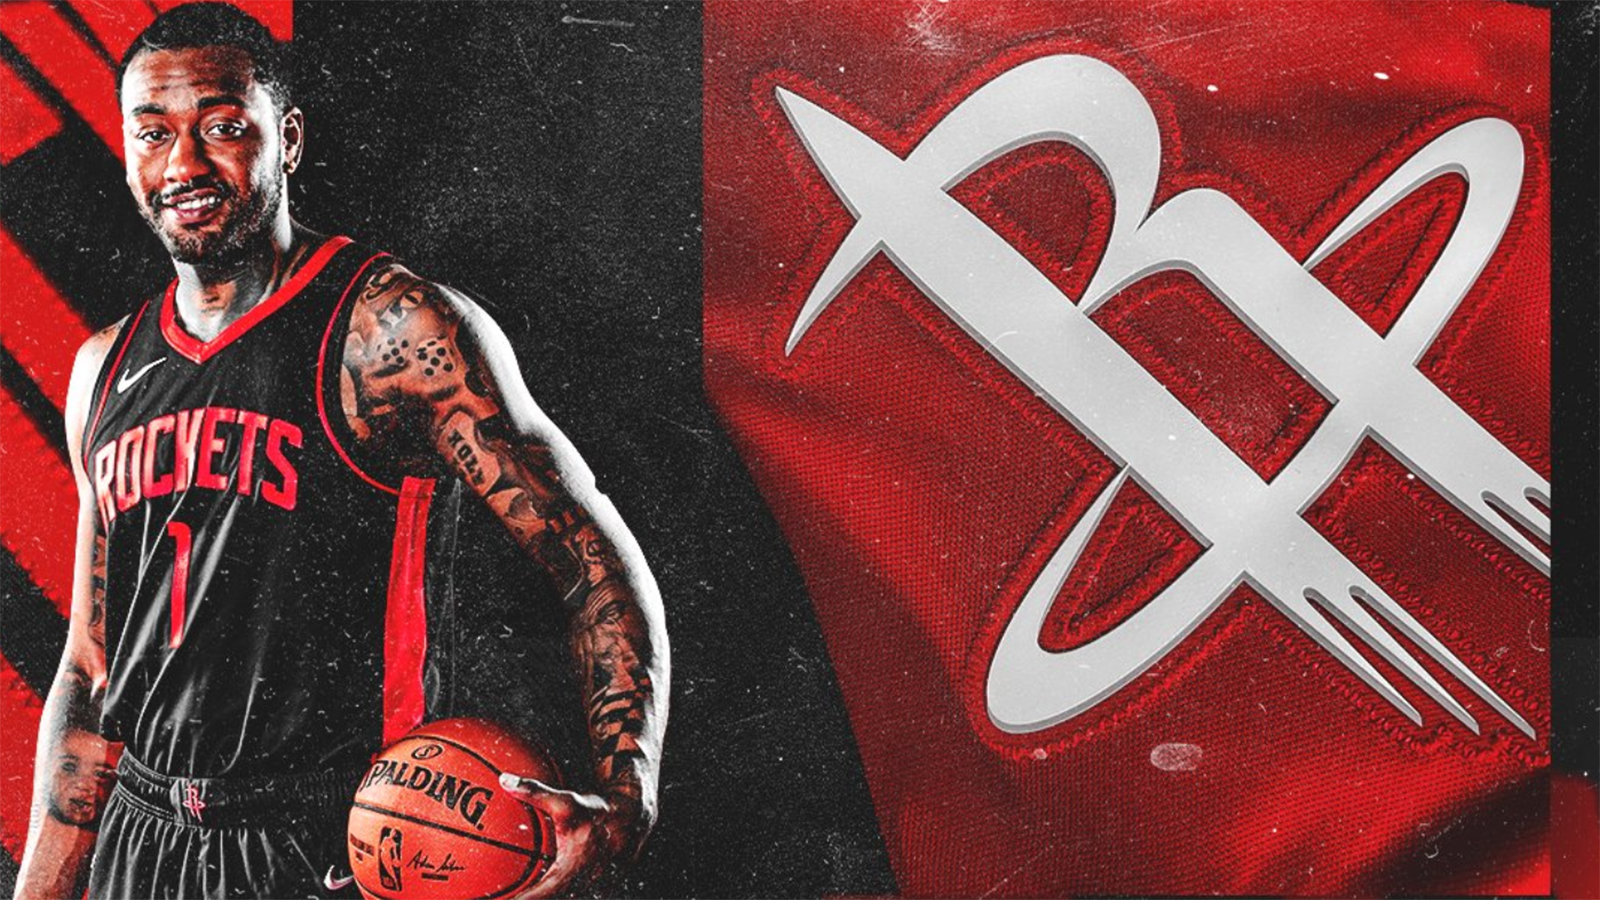 
                <strong>Houston Rockets</strong><br>
                Für gewöhnlich spielen die Rockets in roten Jerseys mit schwarzer Schrift, bei der Earned Edition wurde diese Kombination einfach mal umgedreht. Und das völlig zu Recht. Vielleicht kommt der Erfolg ja mit den neuen Trikots zurück.
              